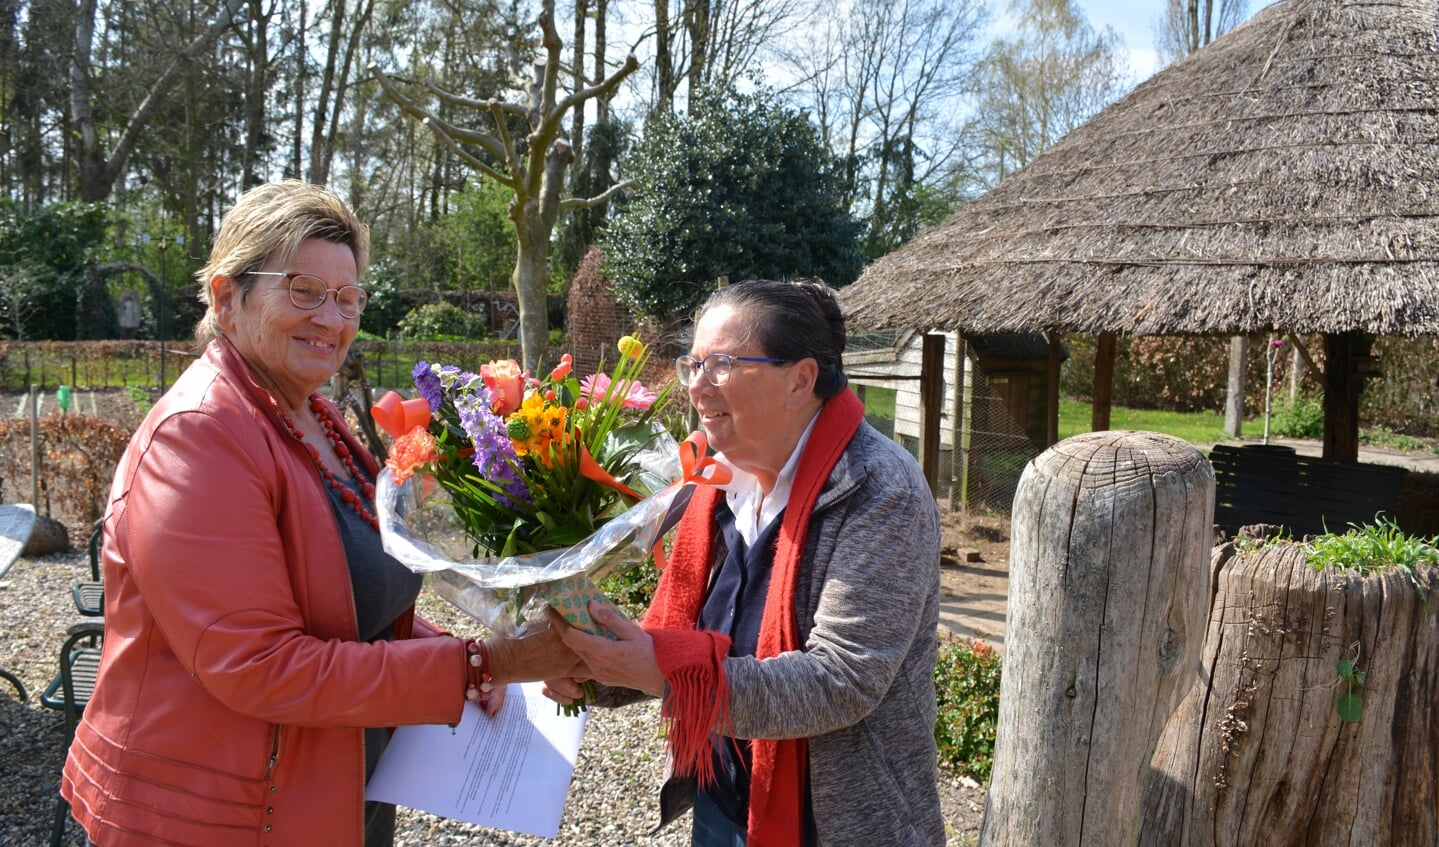 Felicitaties en bloemen van Wilma Aalderink voor Erna Oostendorp. Foto: Diny Oosterlaken